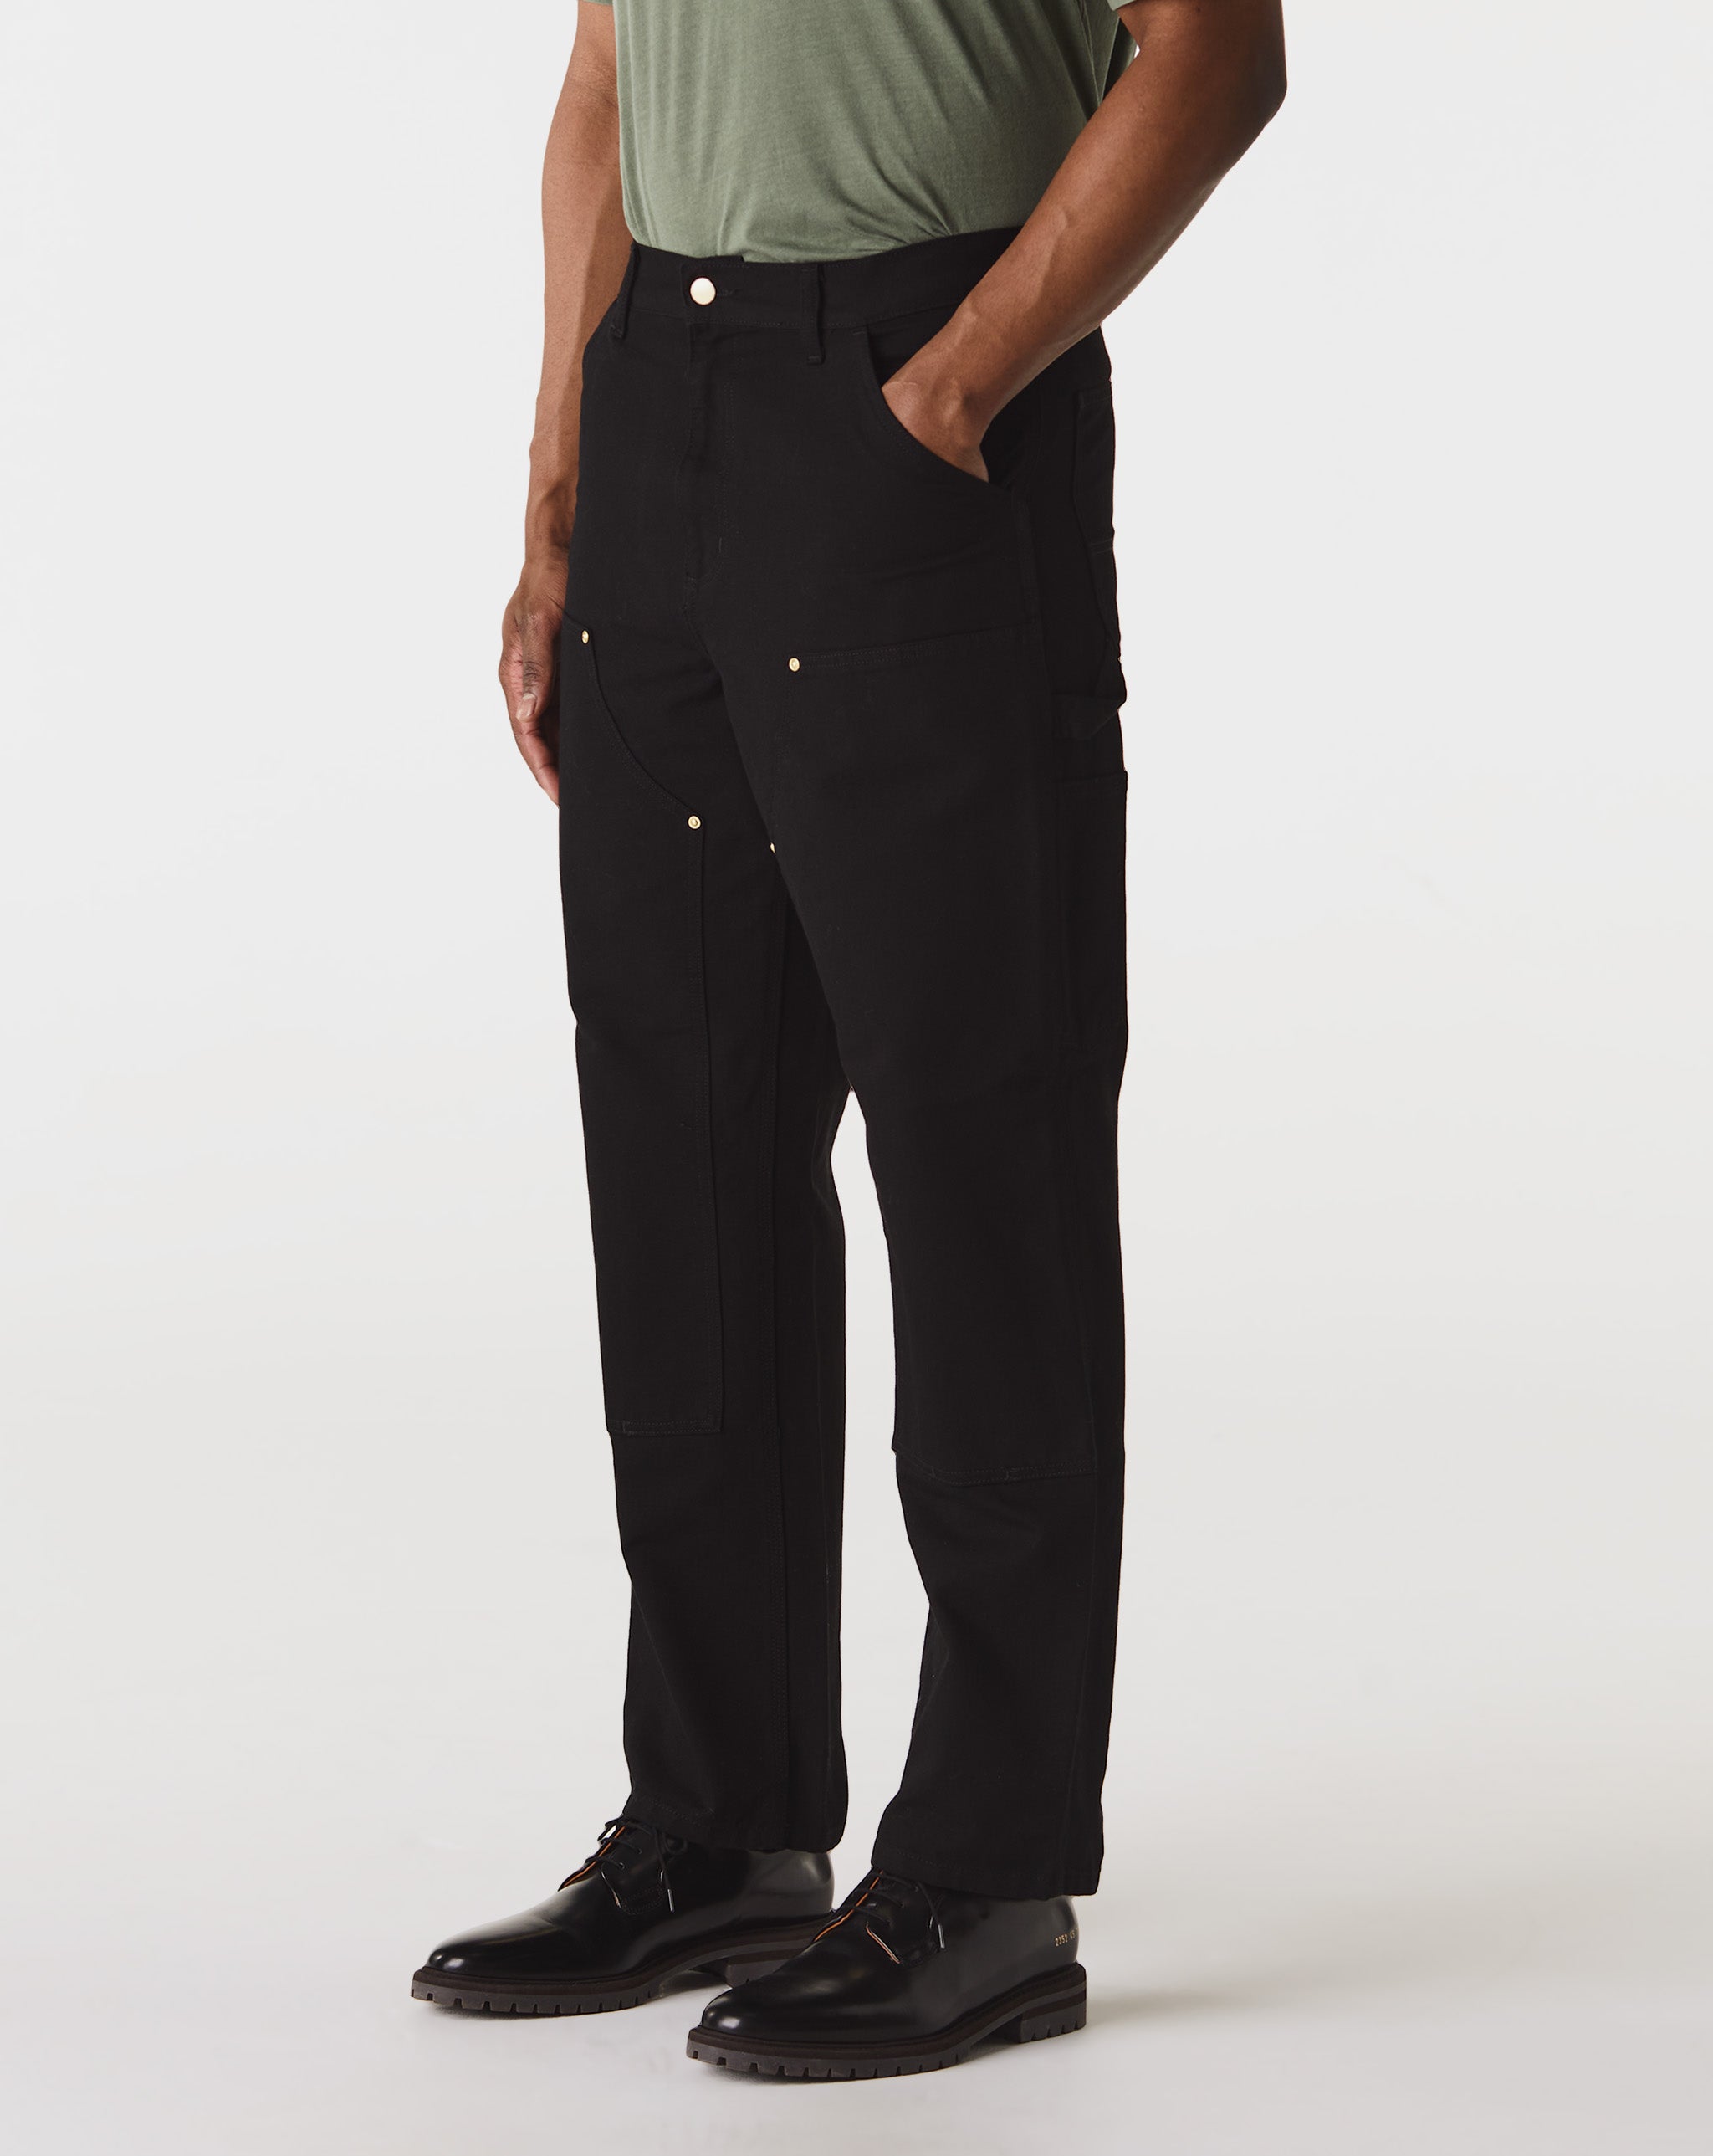 Carhartt WIP Shirts & Polos  - Cheap Urlfreeze Jordan outlet